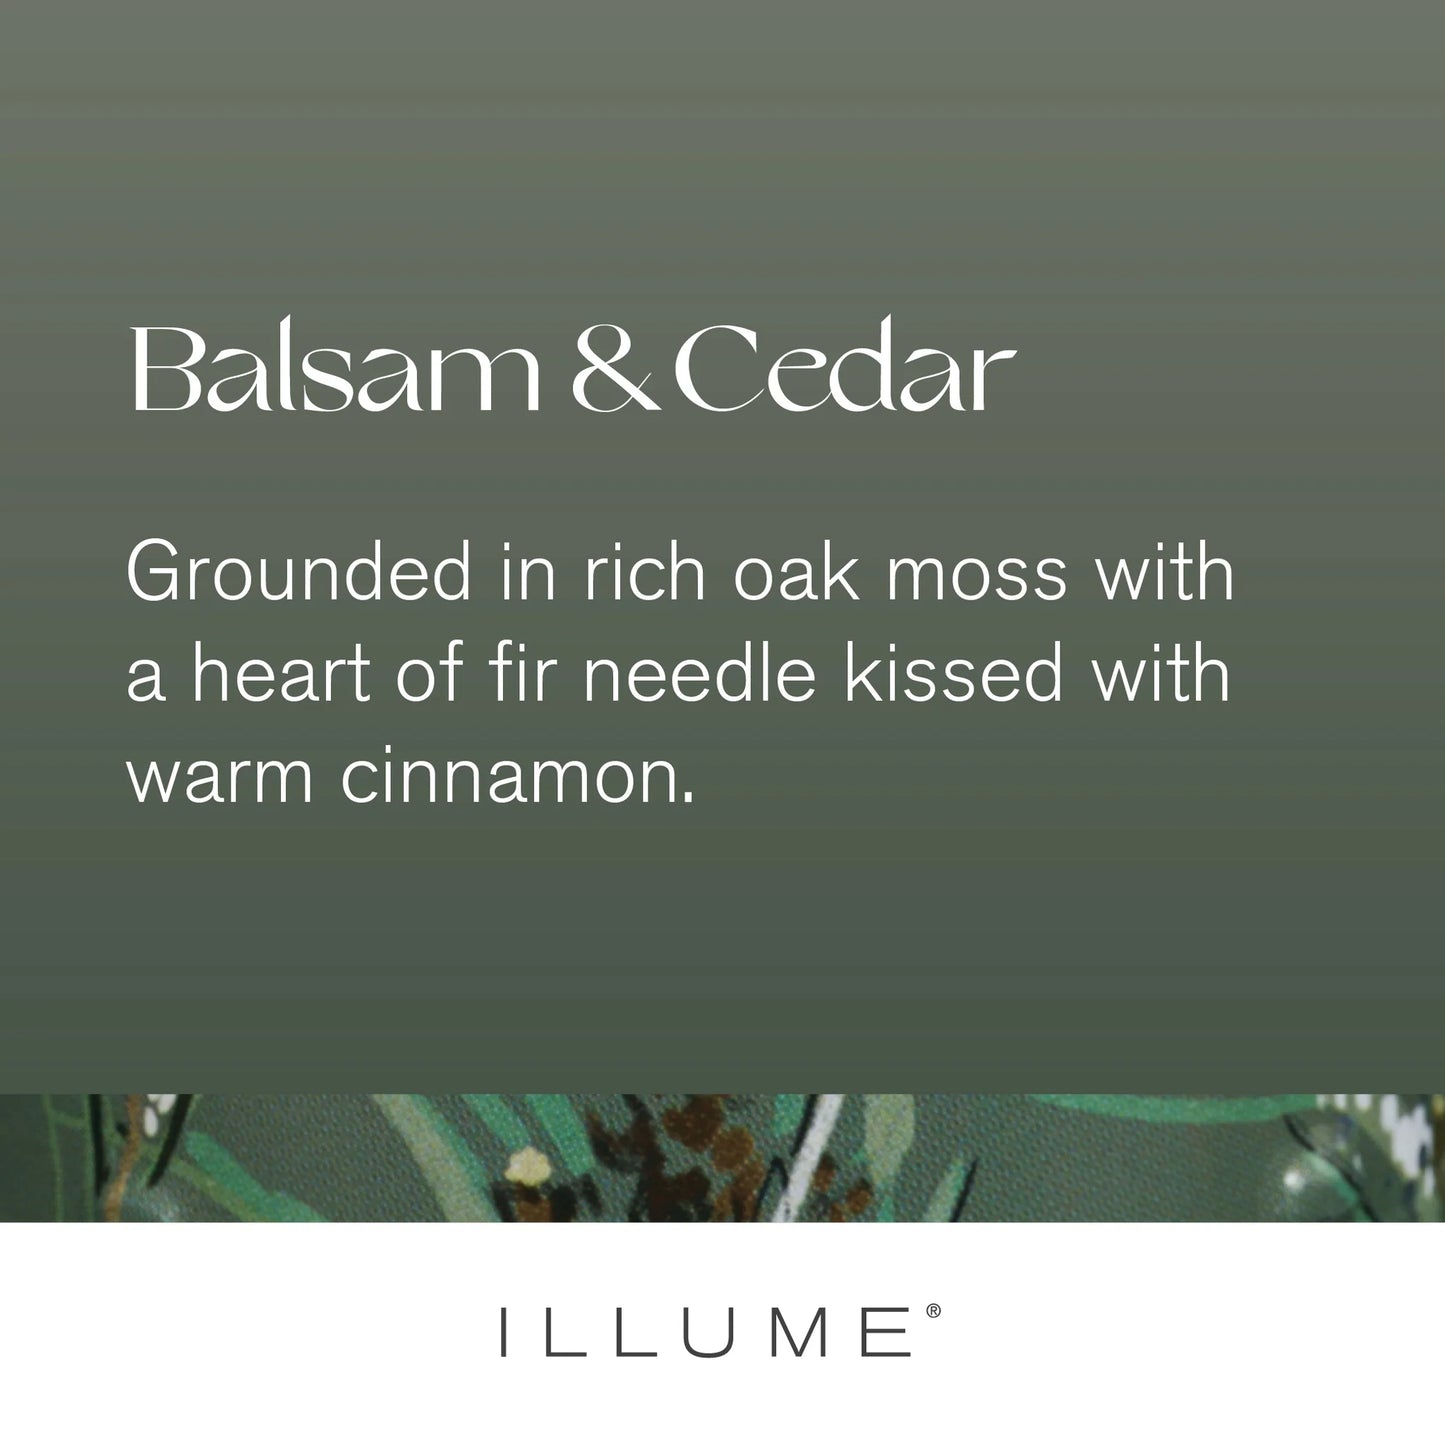 Balsam & Cedar Tins